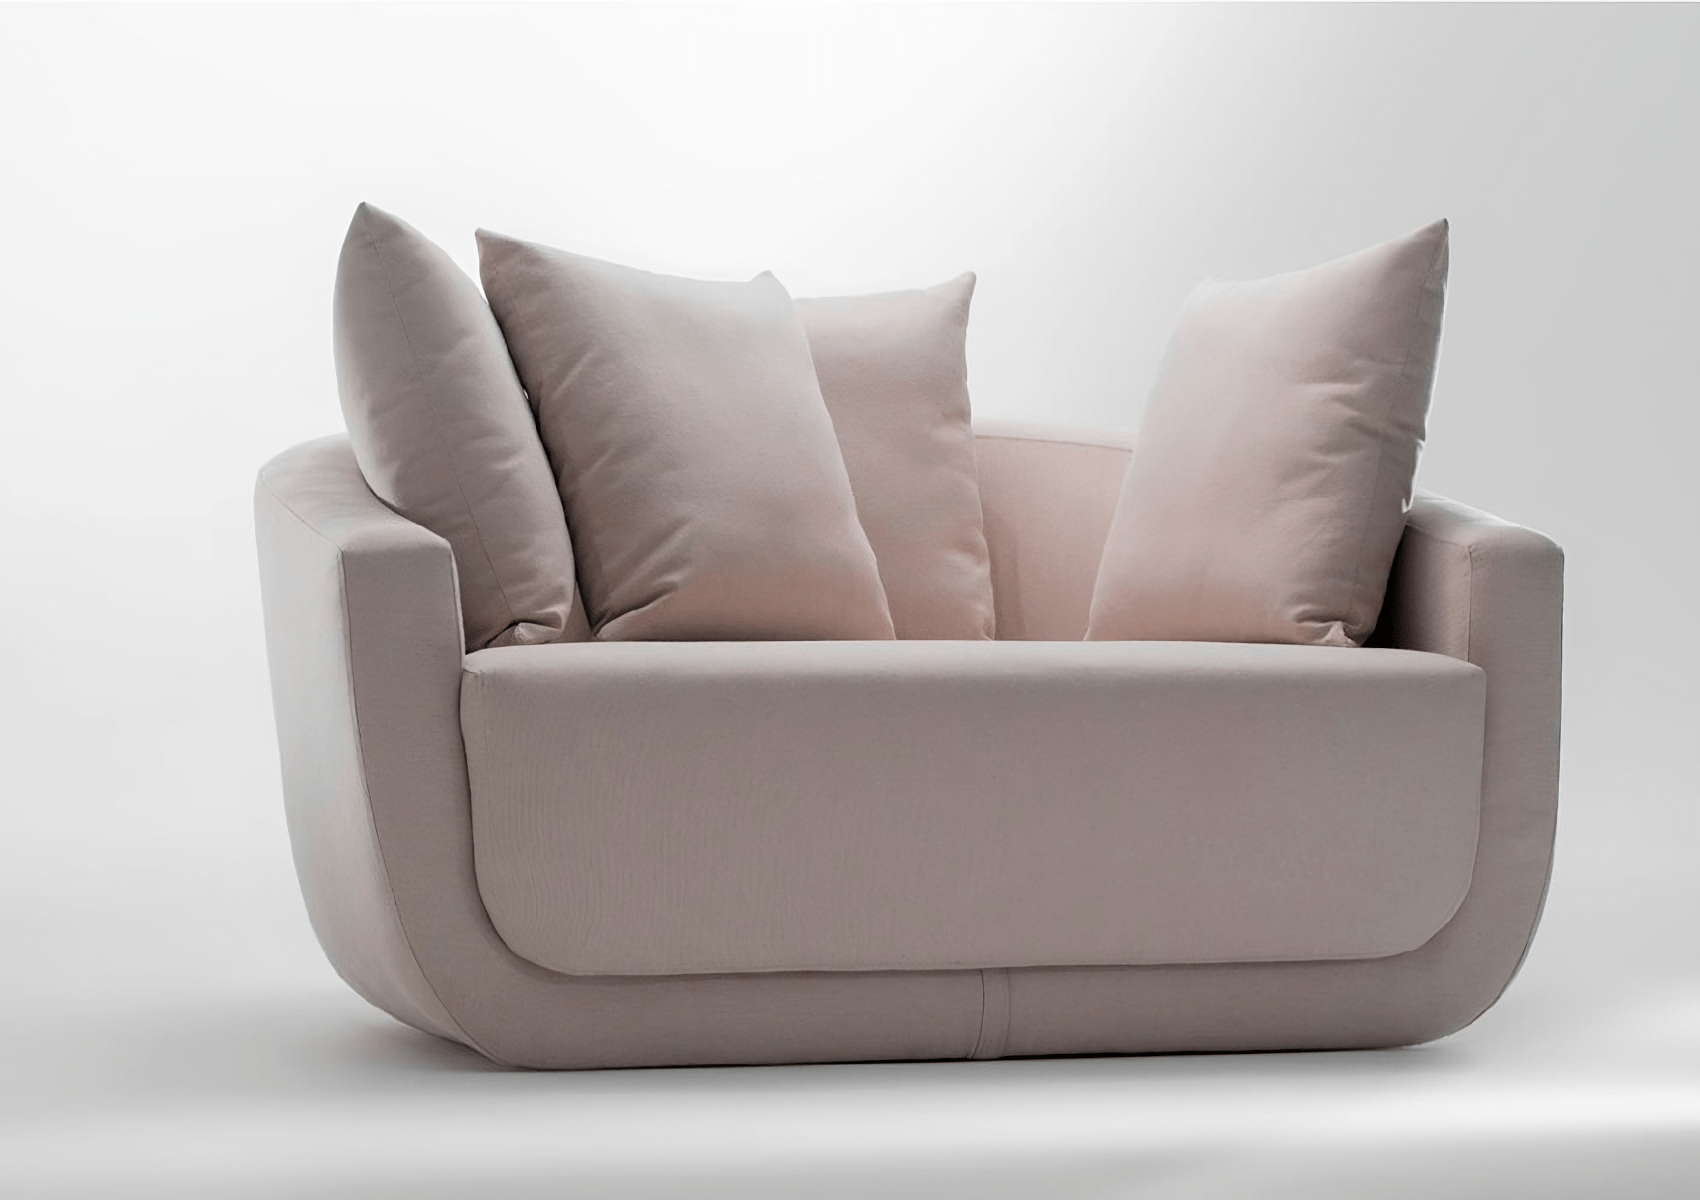 Poltrona Giratória Mari com almofadas decorativas, perfeita para adicionar um toque sofisticado a qualquer ambiente.